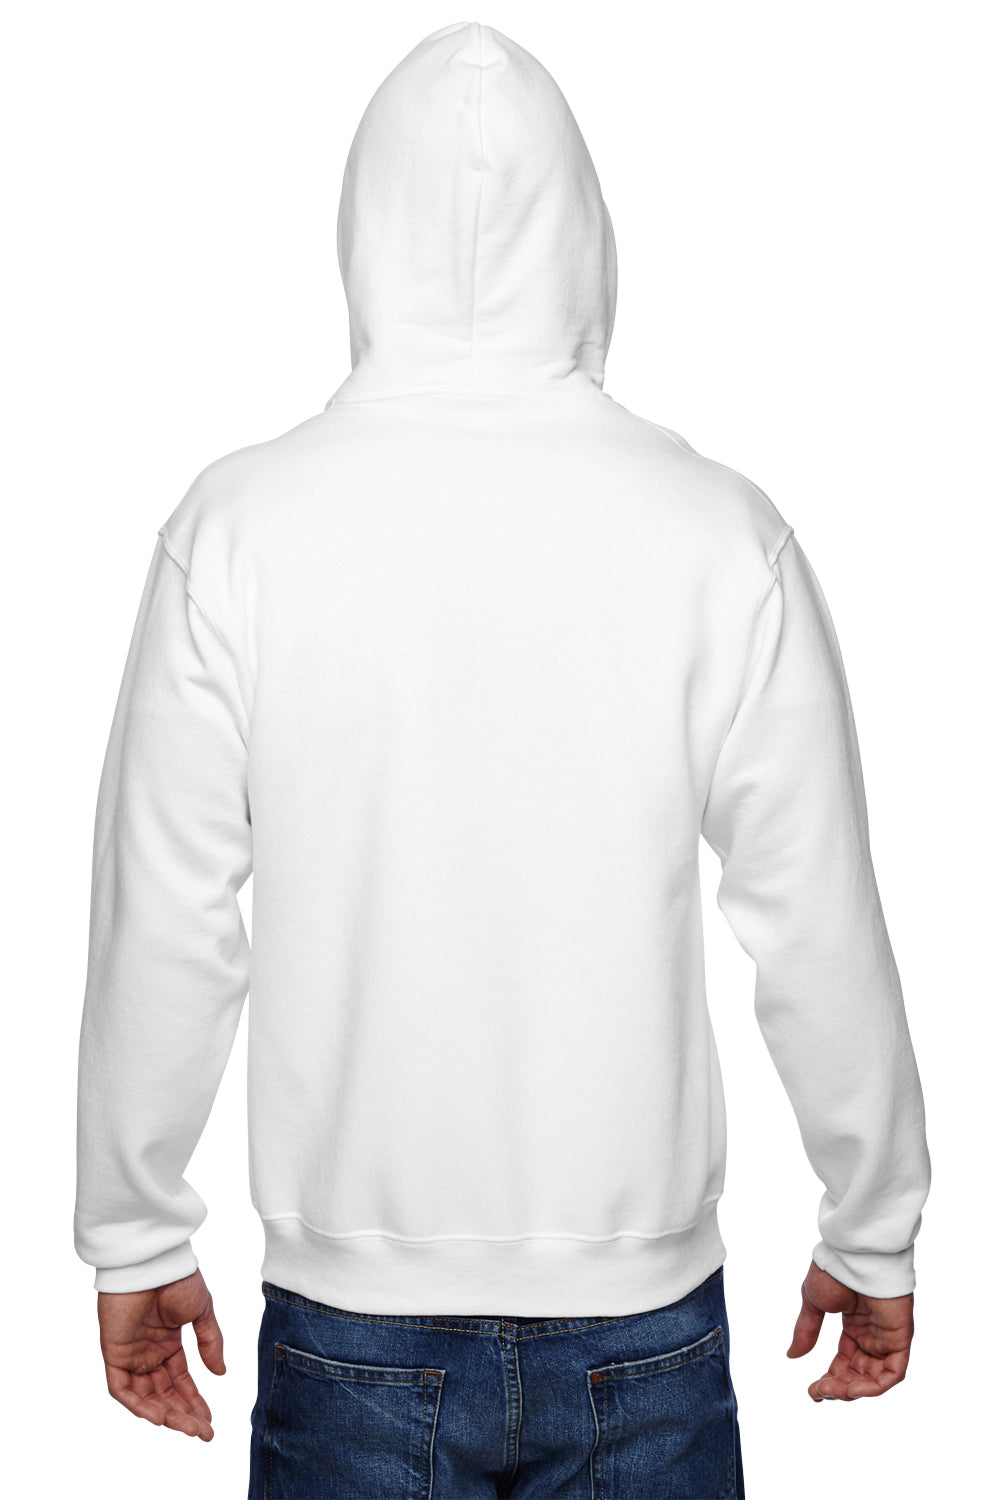 Download Jerzees Mens Super Sweats NuBlend Fleece Full Zip Hooded ...